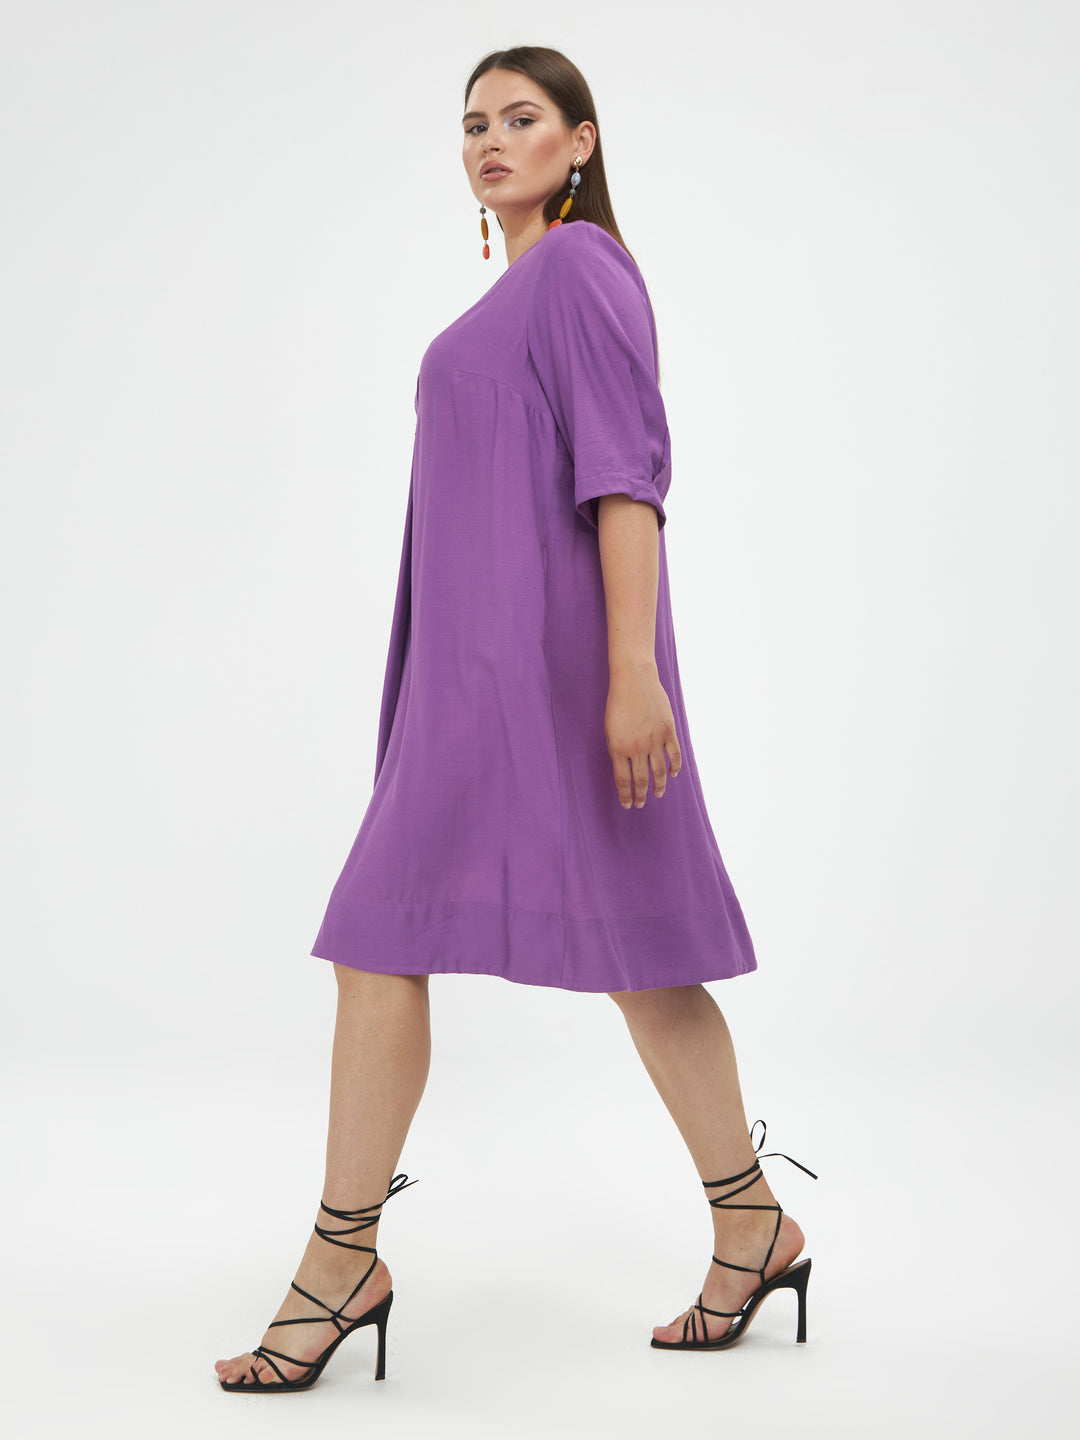 losse lila jurk - mat fashion - - grote maten - dameskleding - kledingwinkel - herent - leuven